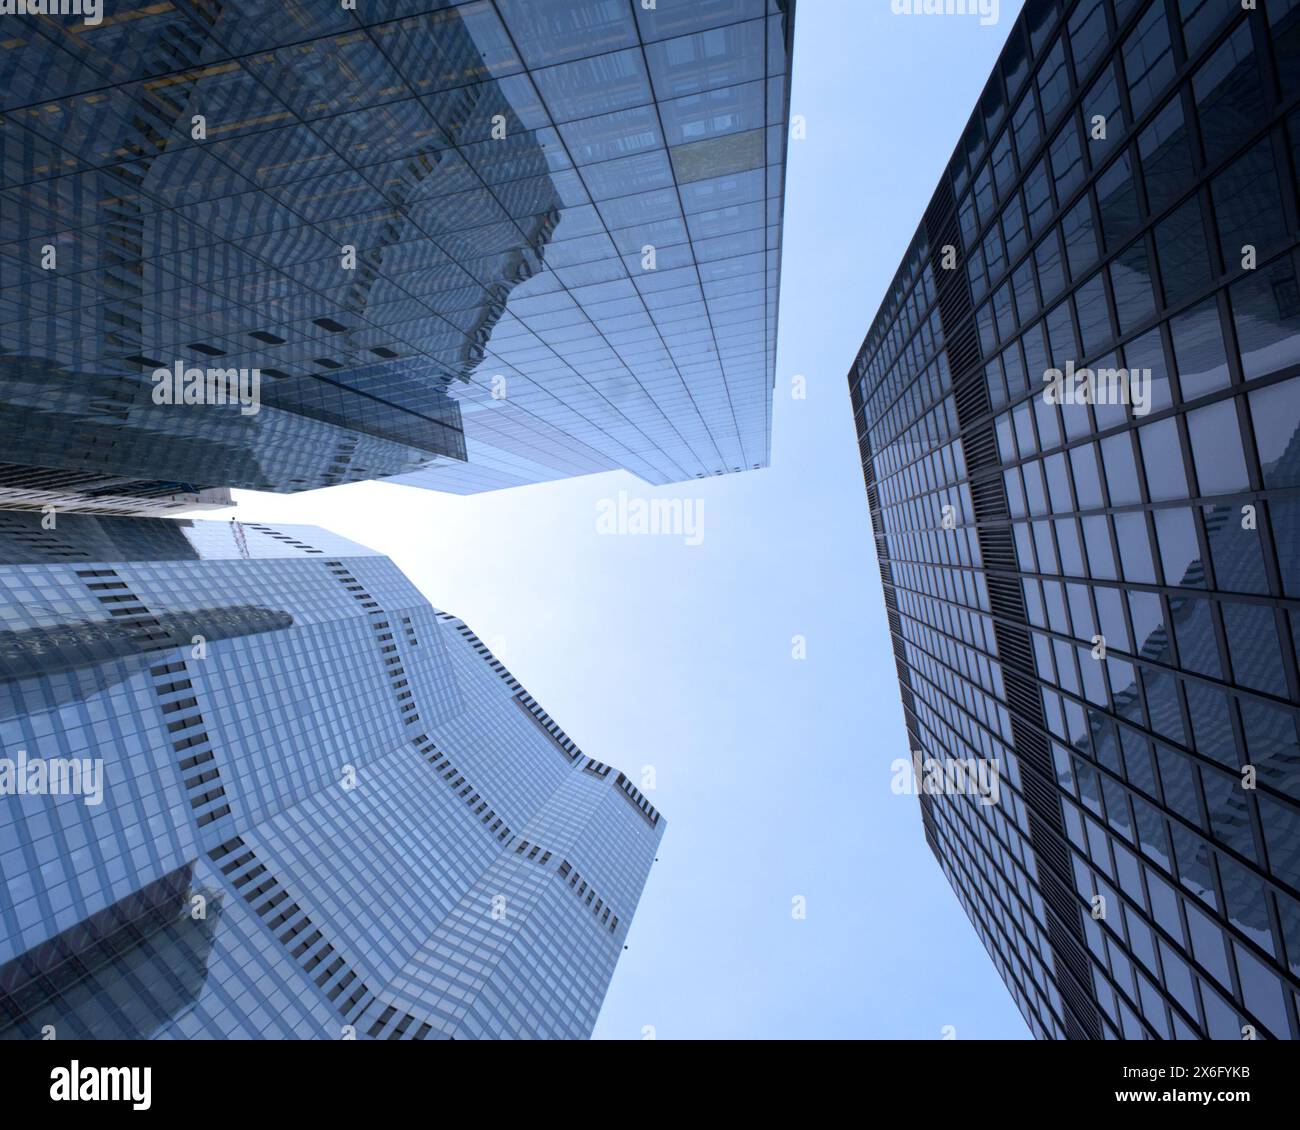 Splendida vista verso l'alto dei moderni grattacieli di vetro nel quartiere finanziario di Londra, che mostrano brillantezza architettonica e design urbano. Foto Stock